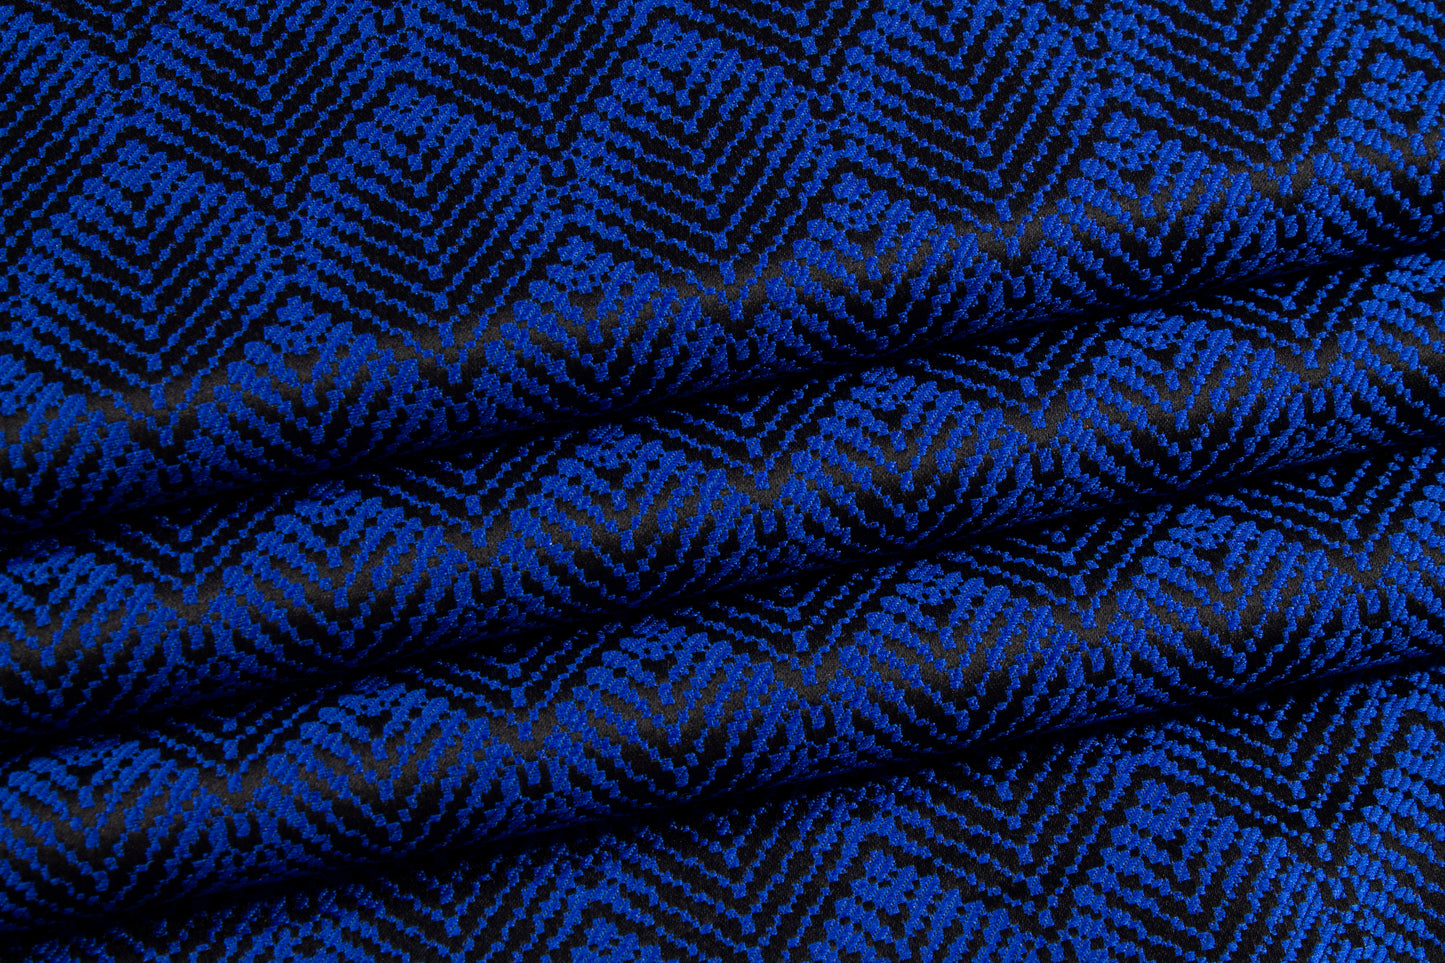 Abstract Brocade - Royal Blue and Black